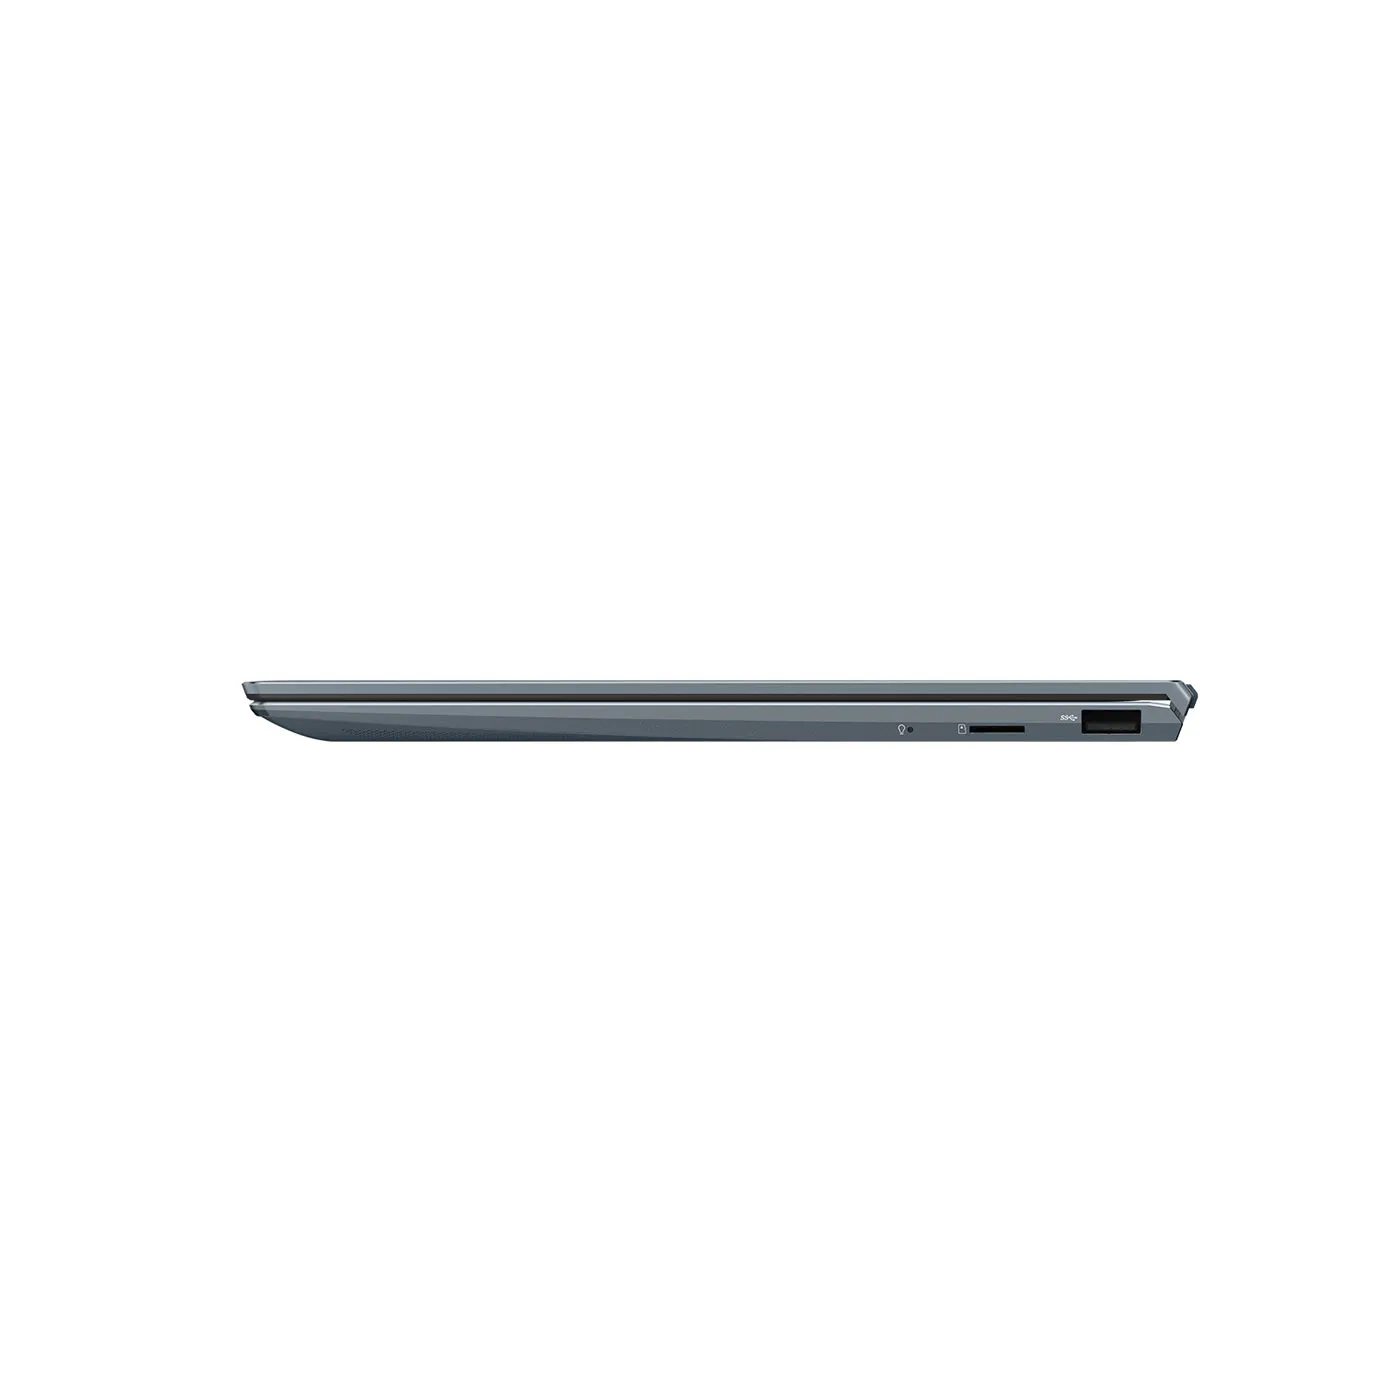 Computador Portátil ASUS ZenBook 13,3" Pulgadas UX325EA - Intel Core I5 - RAM 8GB - Disco SSD 512GB - Gris + Obsequios